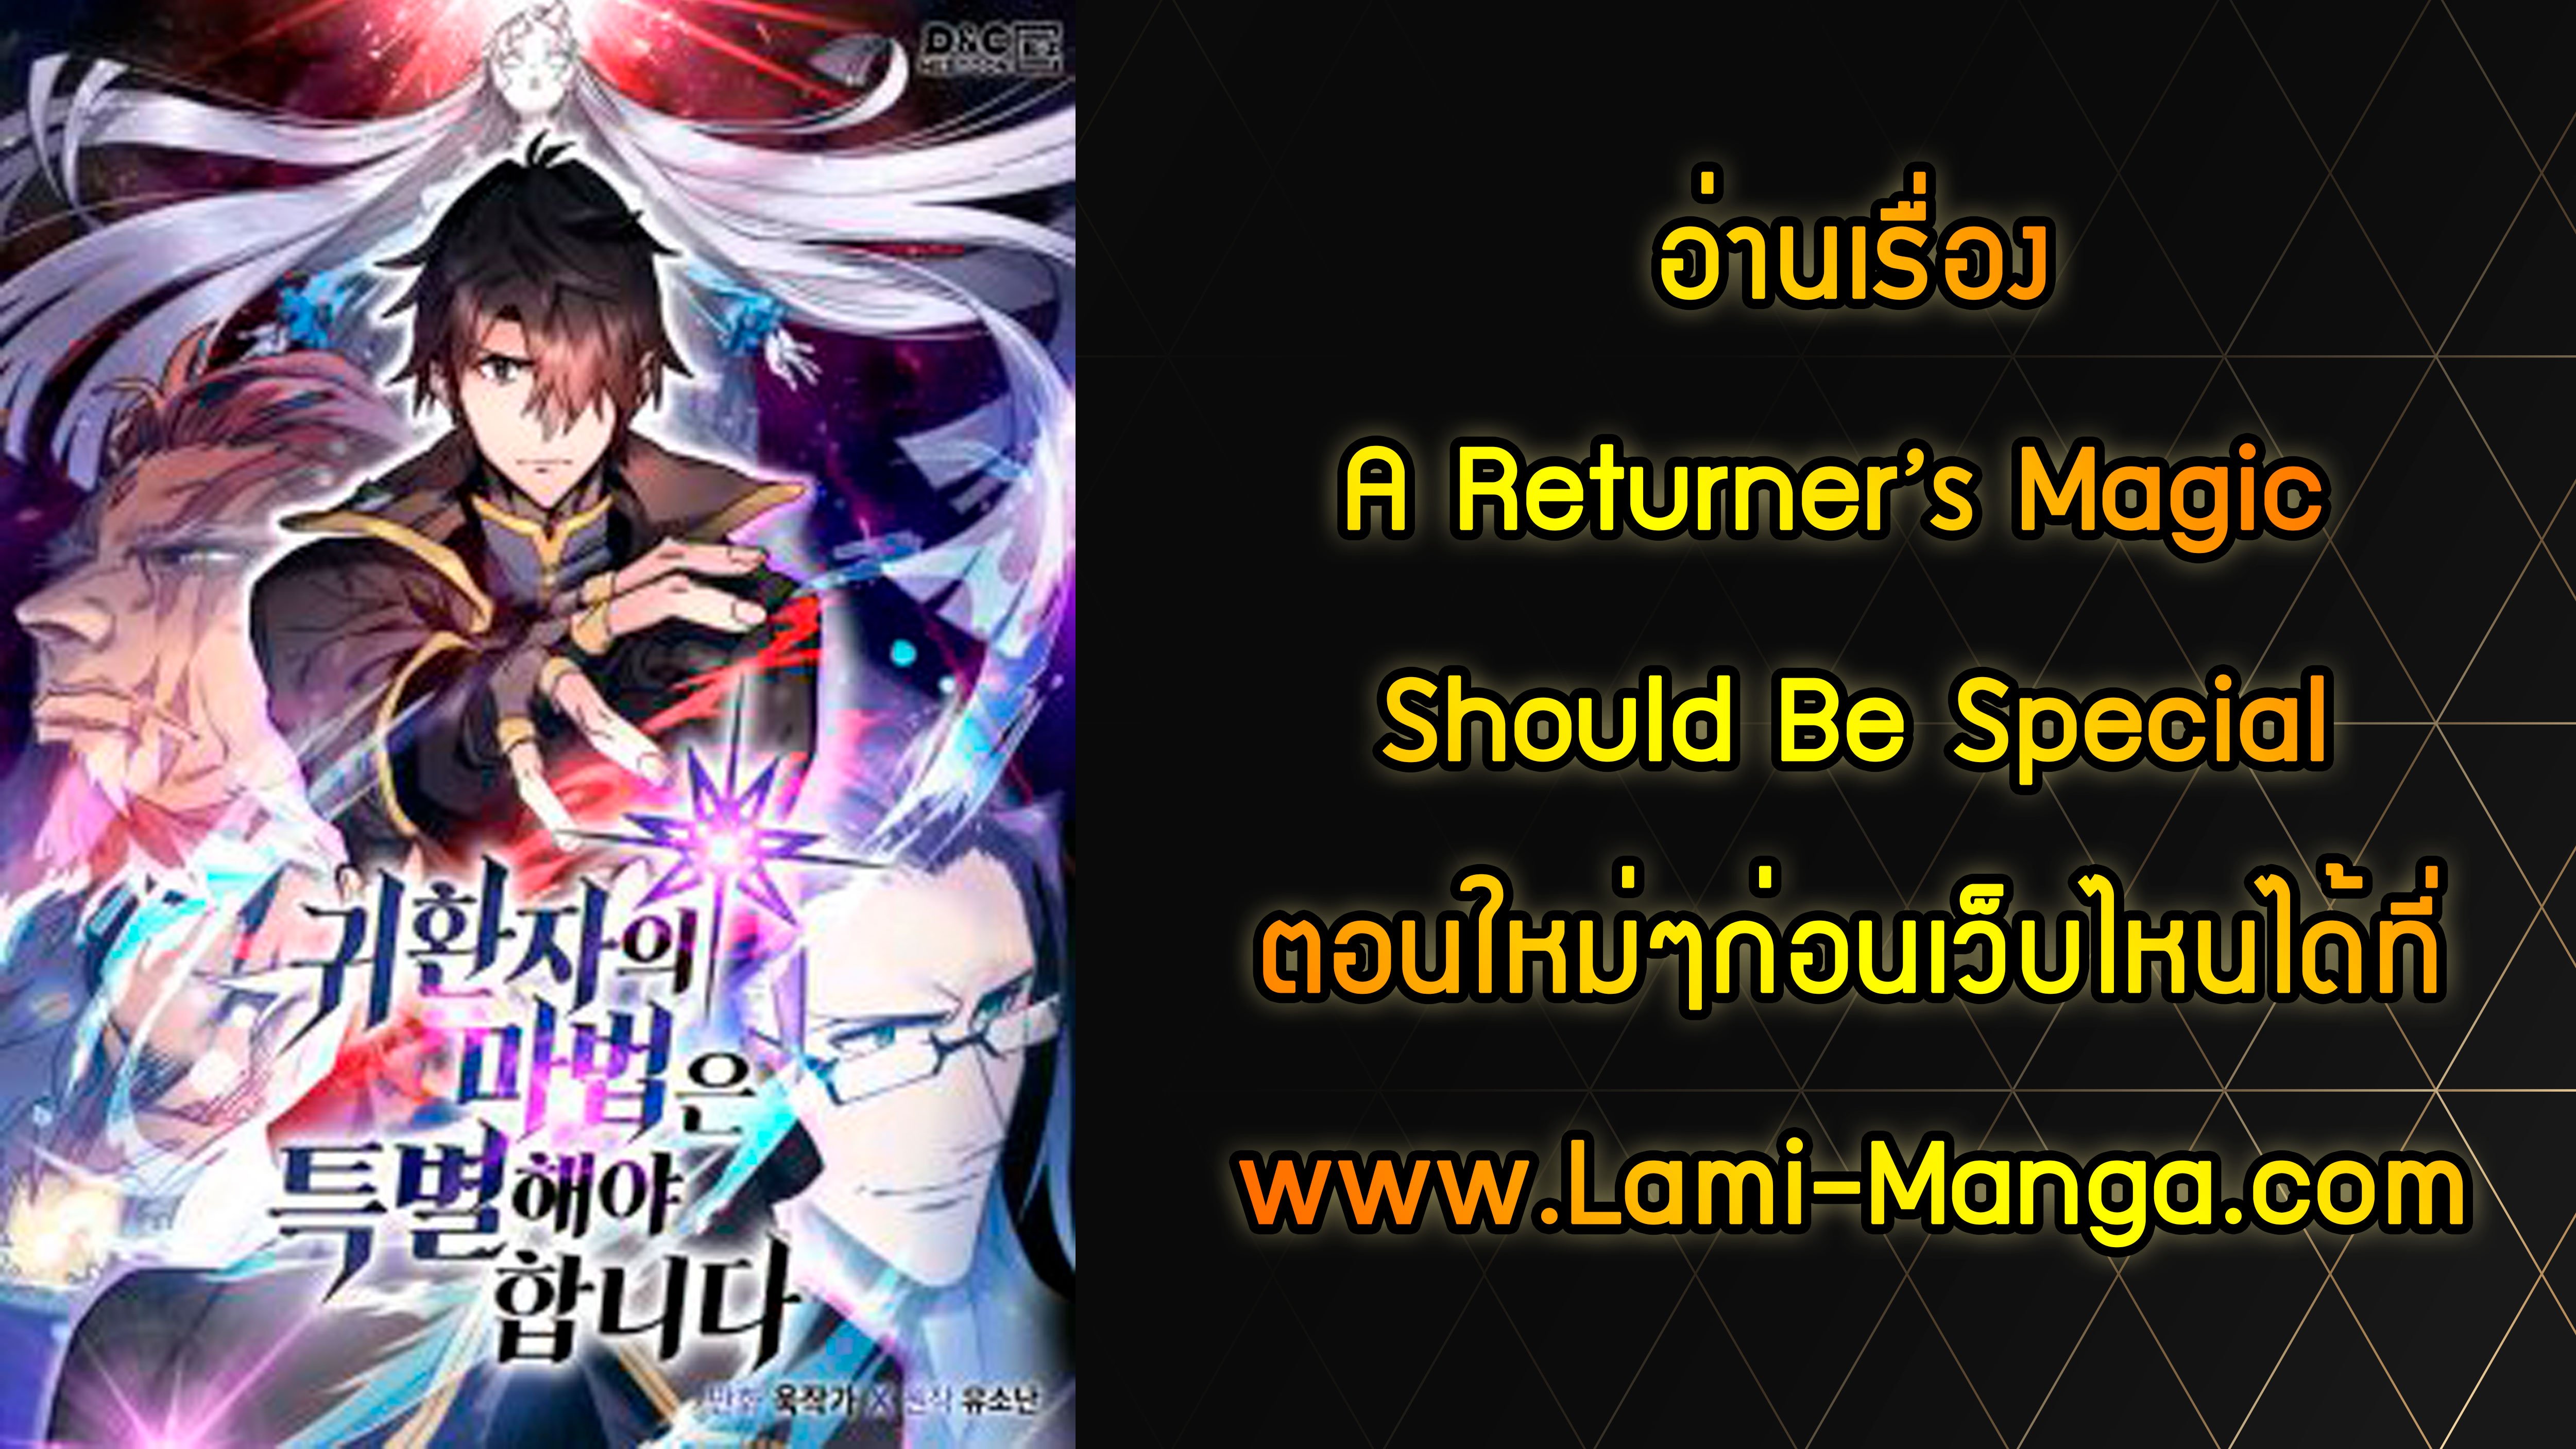 A Returner’s Magic Should Be Special114 03